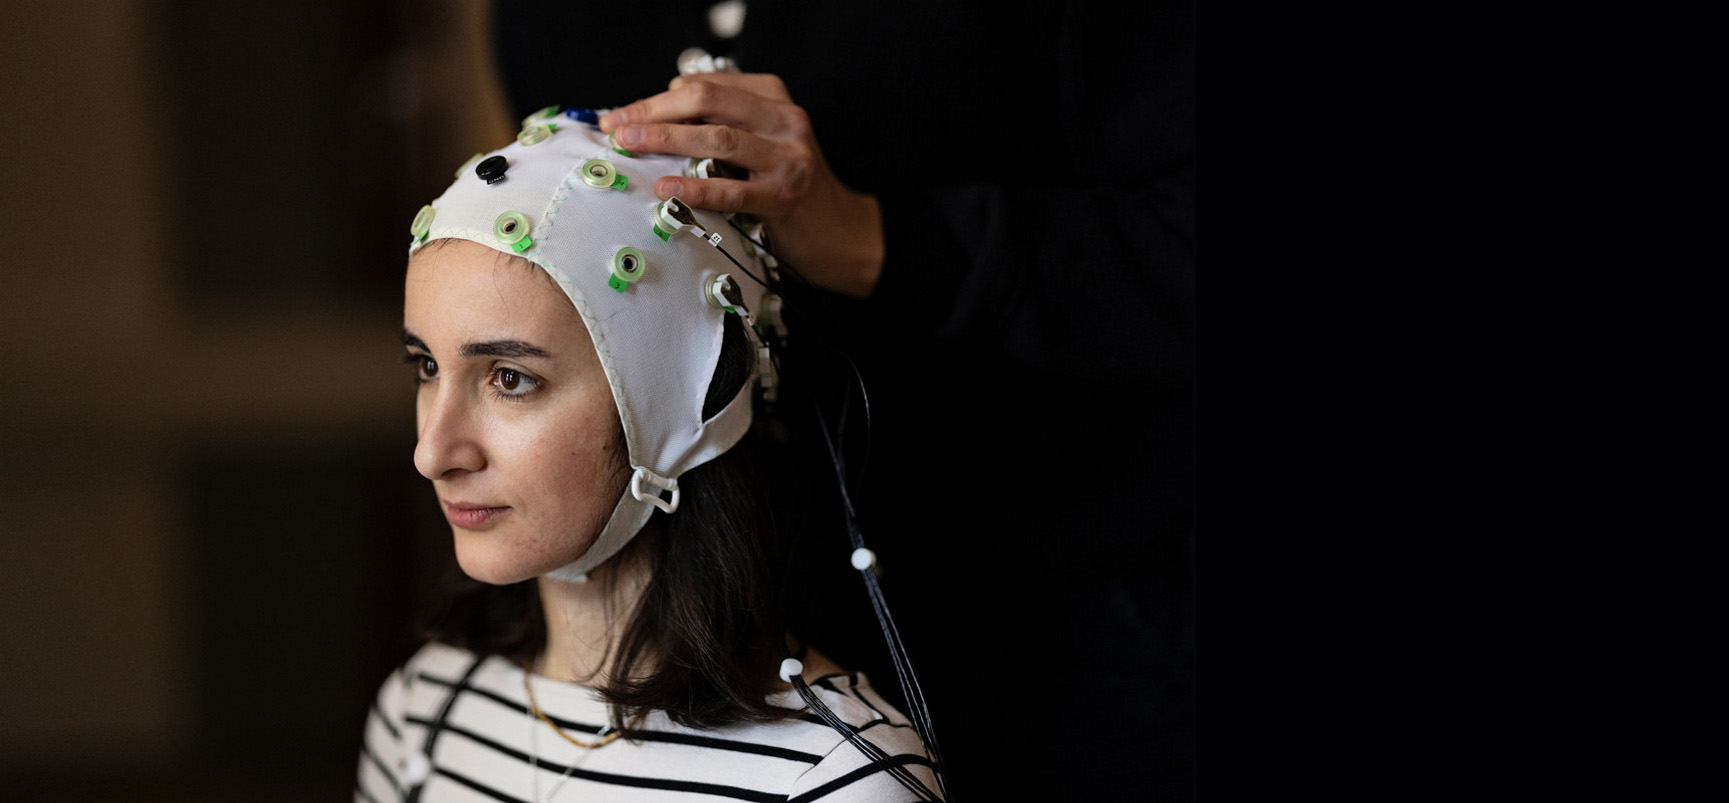 Forsker plasserer elektroder på hodet til en dame under forskning. Foto